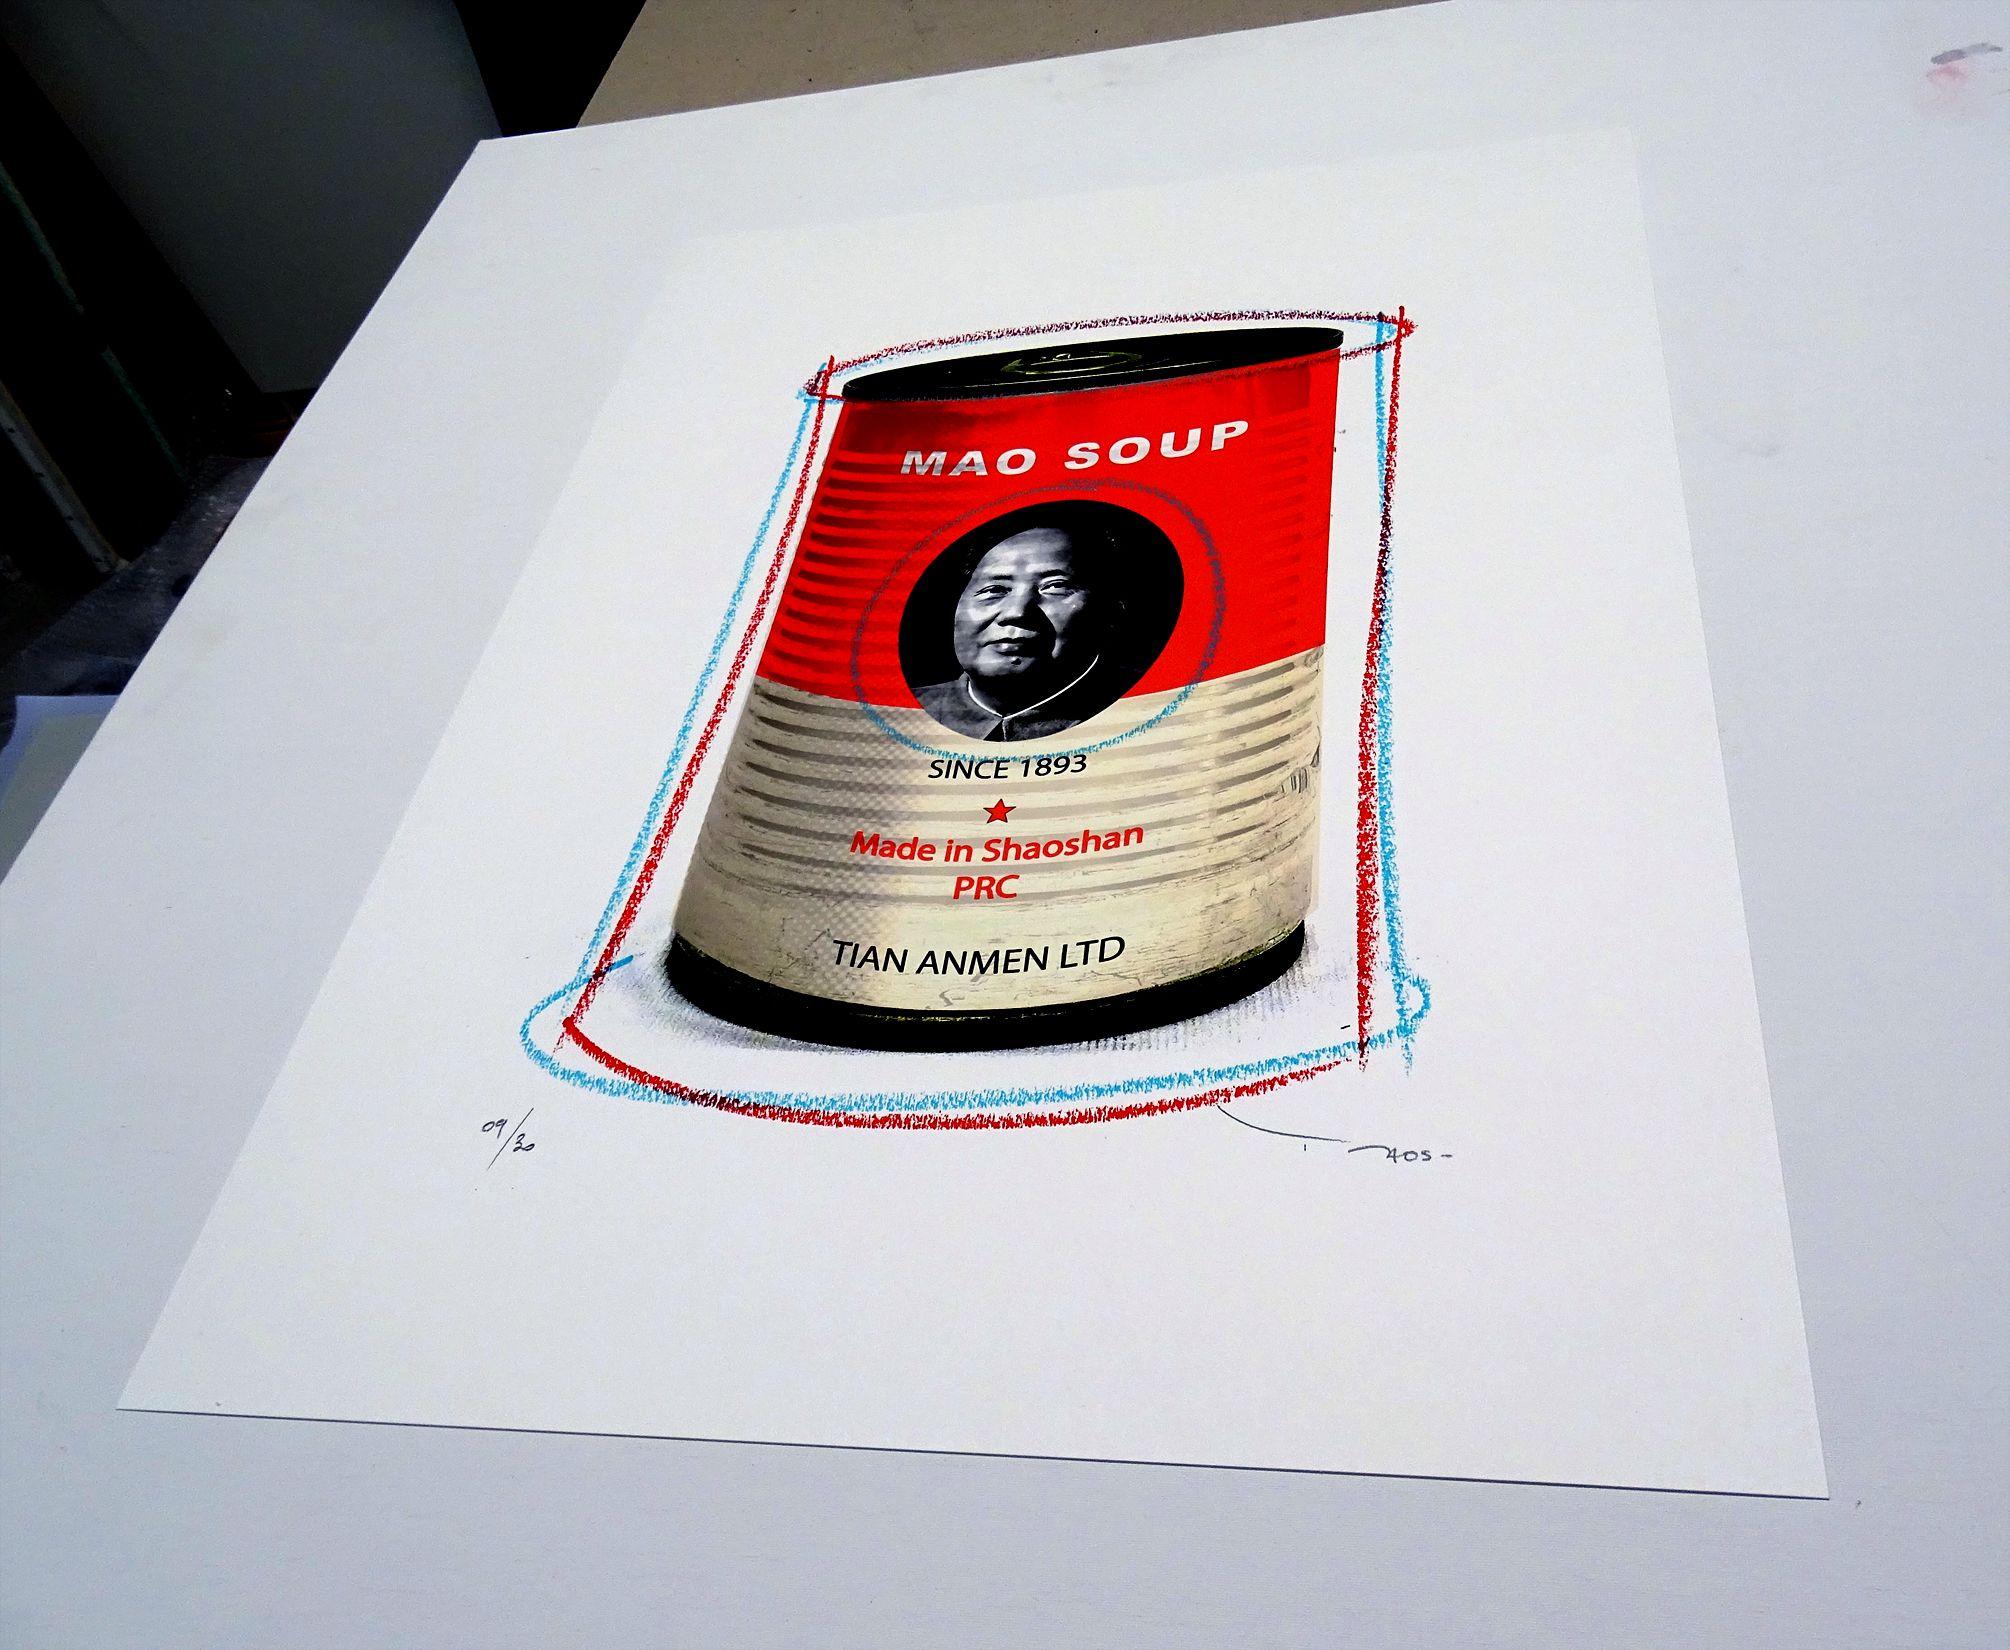 Tehos – Mao-Suppen, Mischtechnik auf Papier (Pop-Art), Mixed Media Art, von Tehos Frederic Camilleri